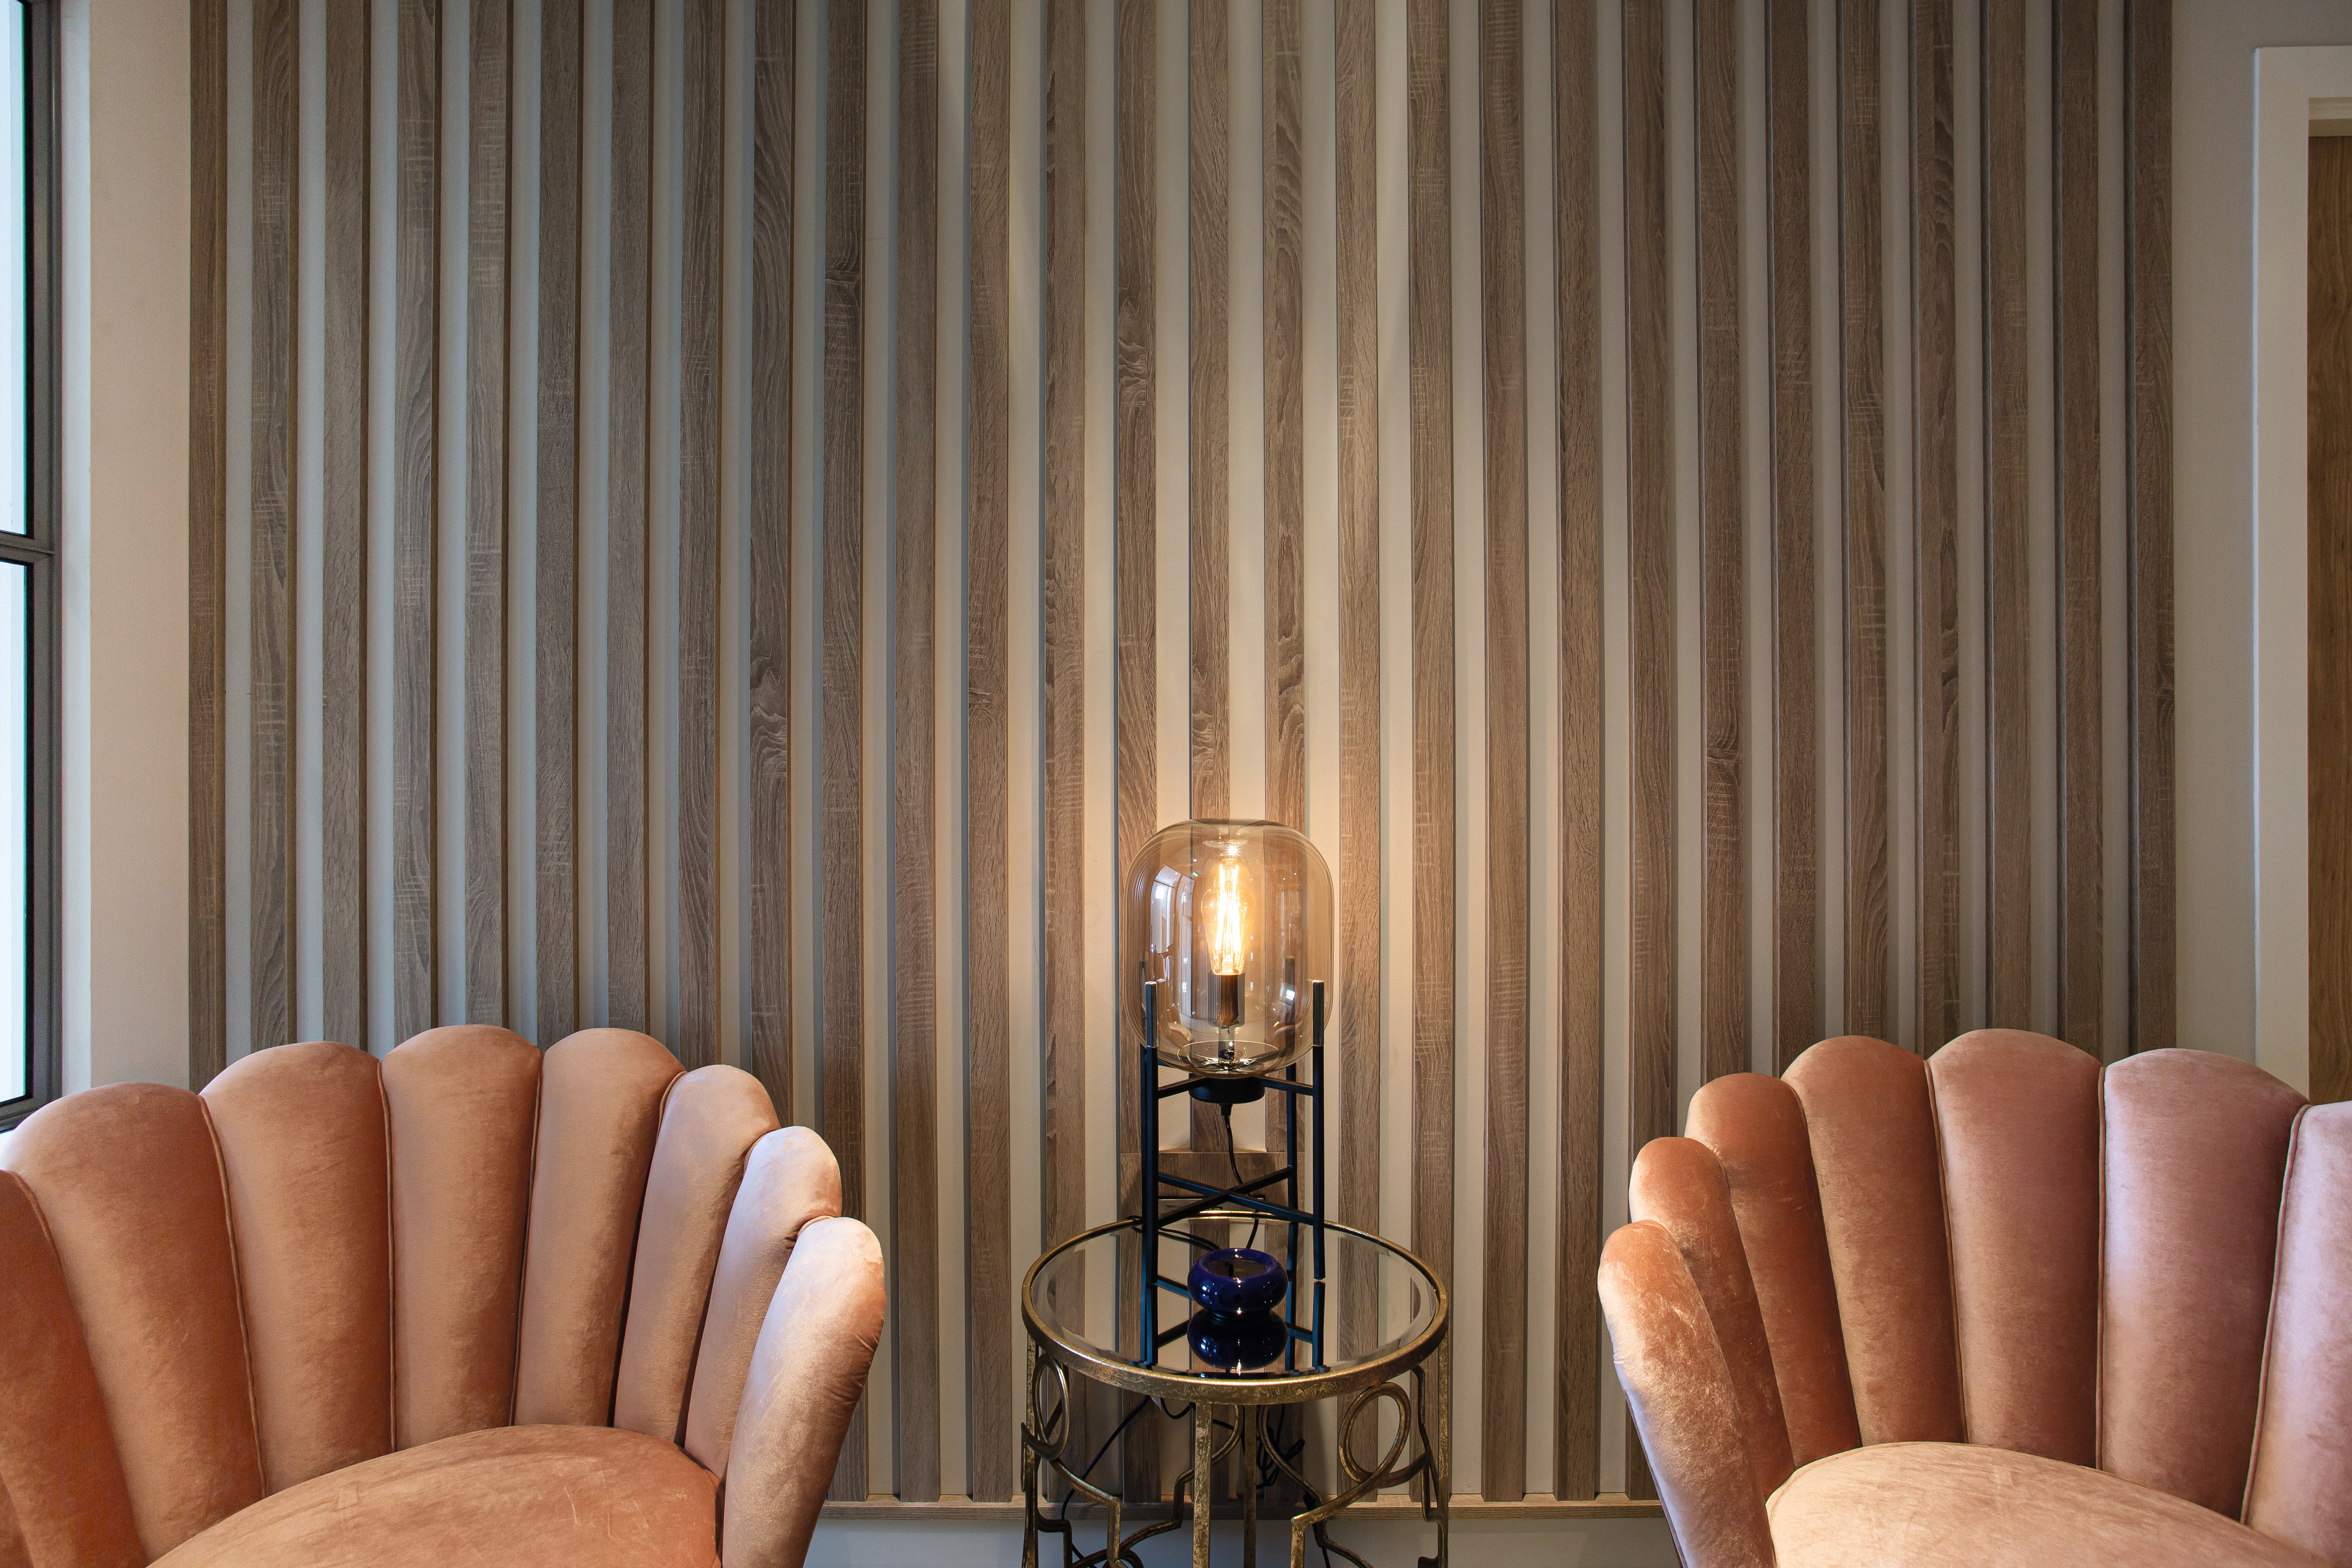 Les lattes dans le décor Chêne Bardolino gris disposées sur les murs créent une atmosphère particulièrement relaxante.